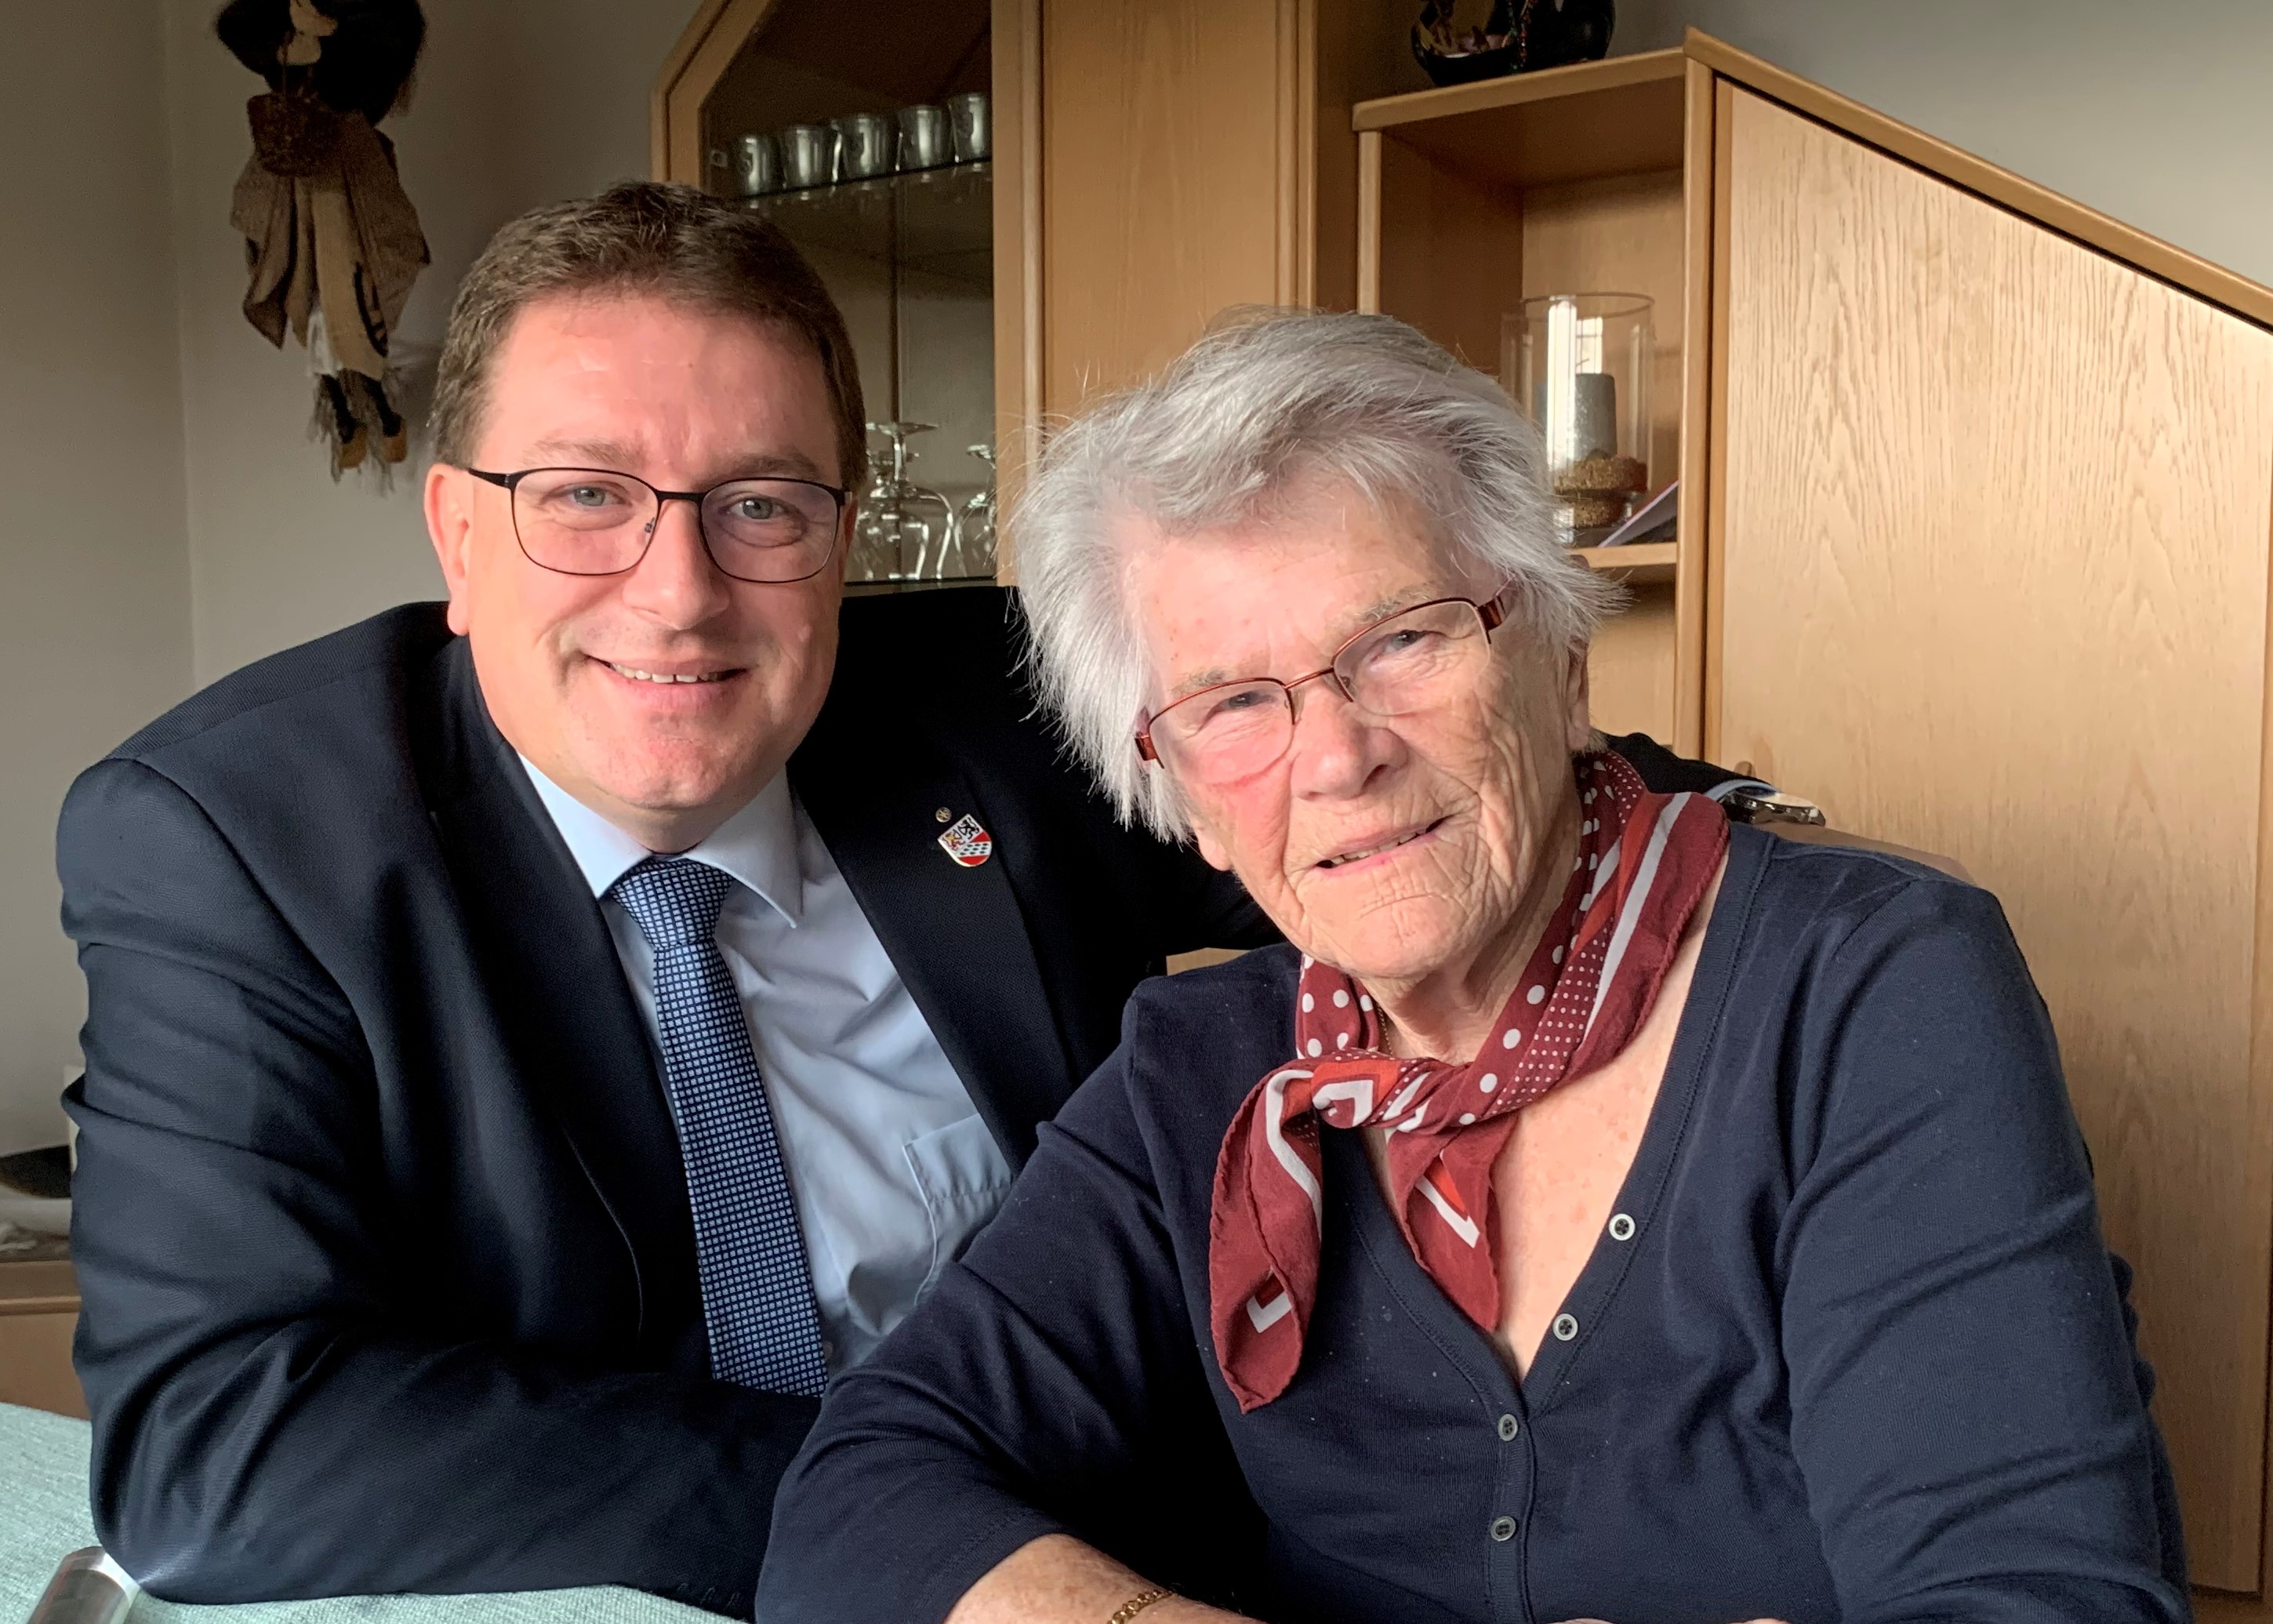 Am Samstag, 23. November 2019 durfte Frau Gertrud Scheidegger ihren 90. Geburtstag feiern.
Die Gemeindebehörden gratulieren ganz herzlich!